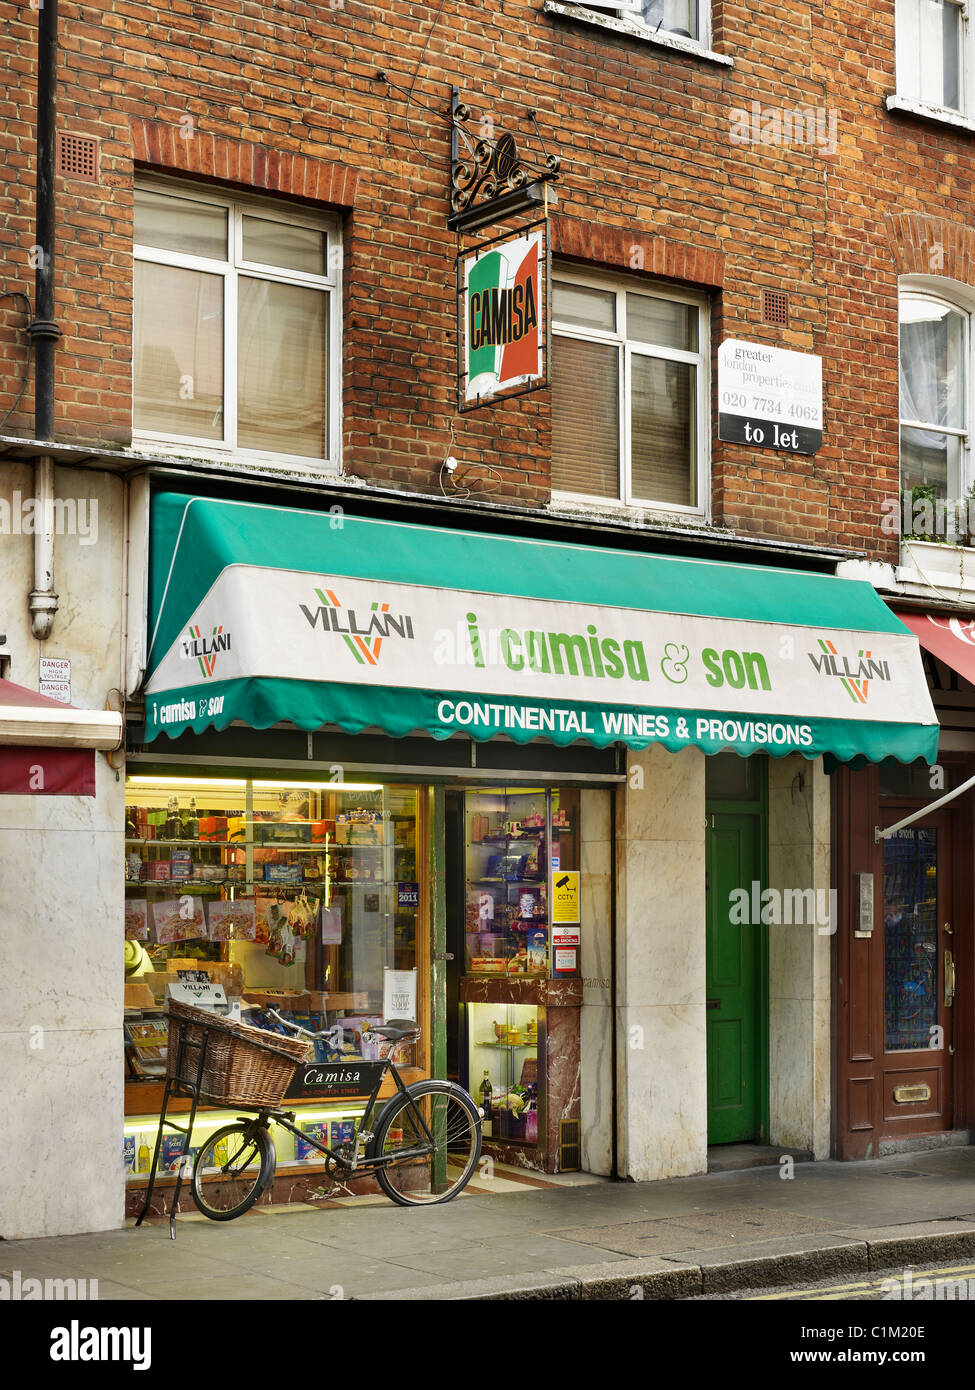 Camisa speichert, Old Compton Street, Soho, London. Traditionelle italienische Feinkost mit Lieferung Fahrrad. Stockfoto